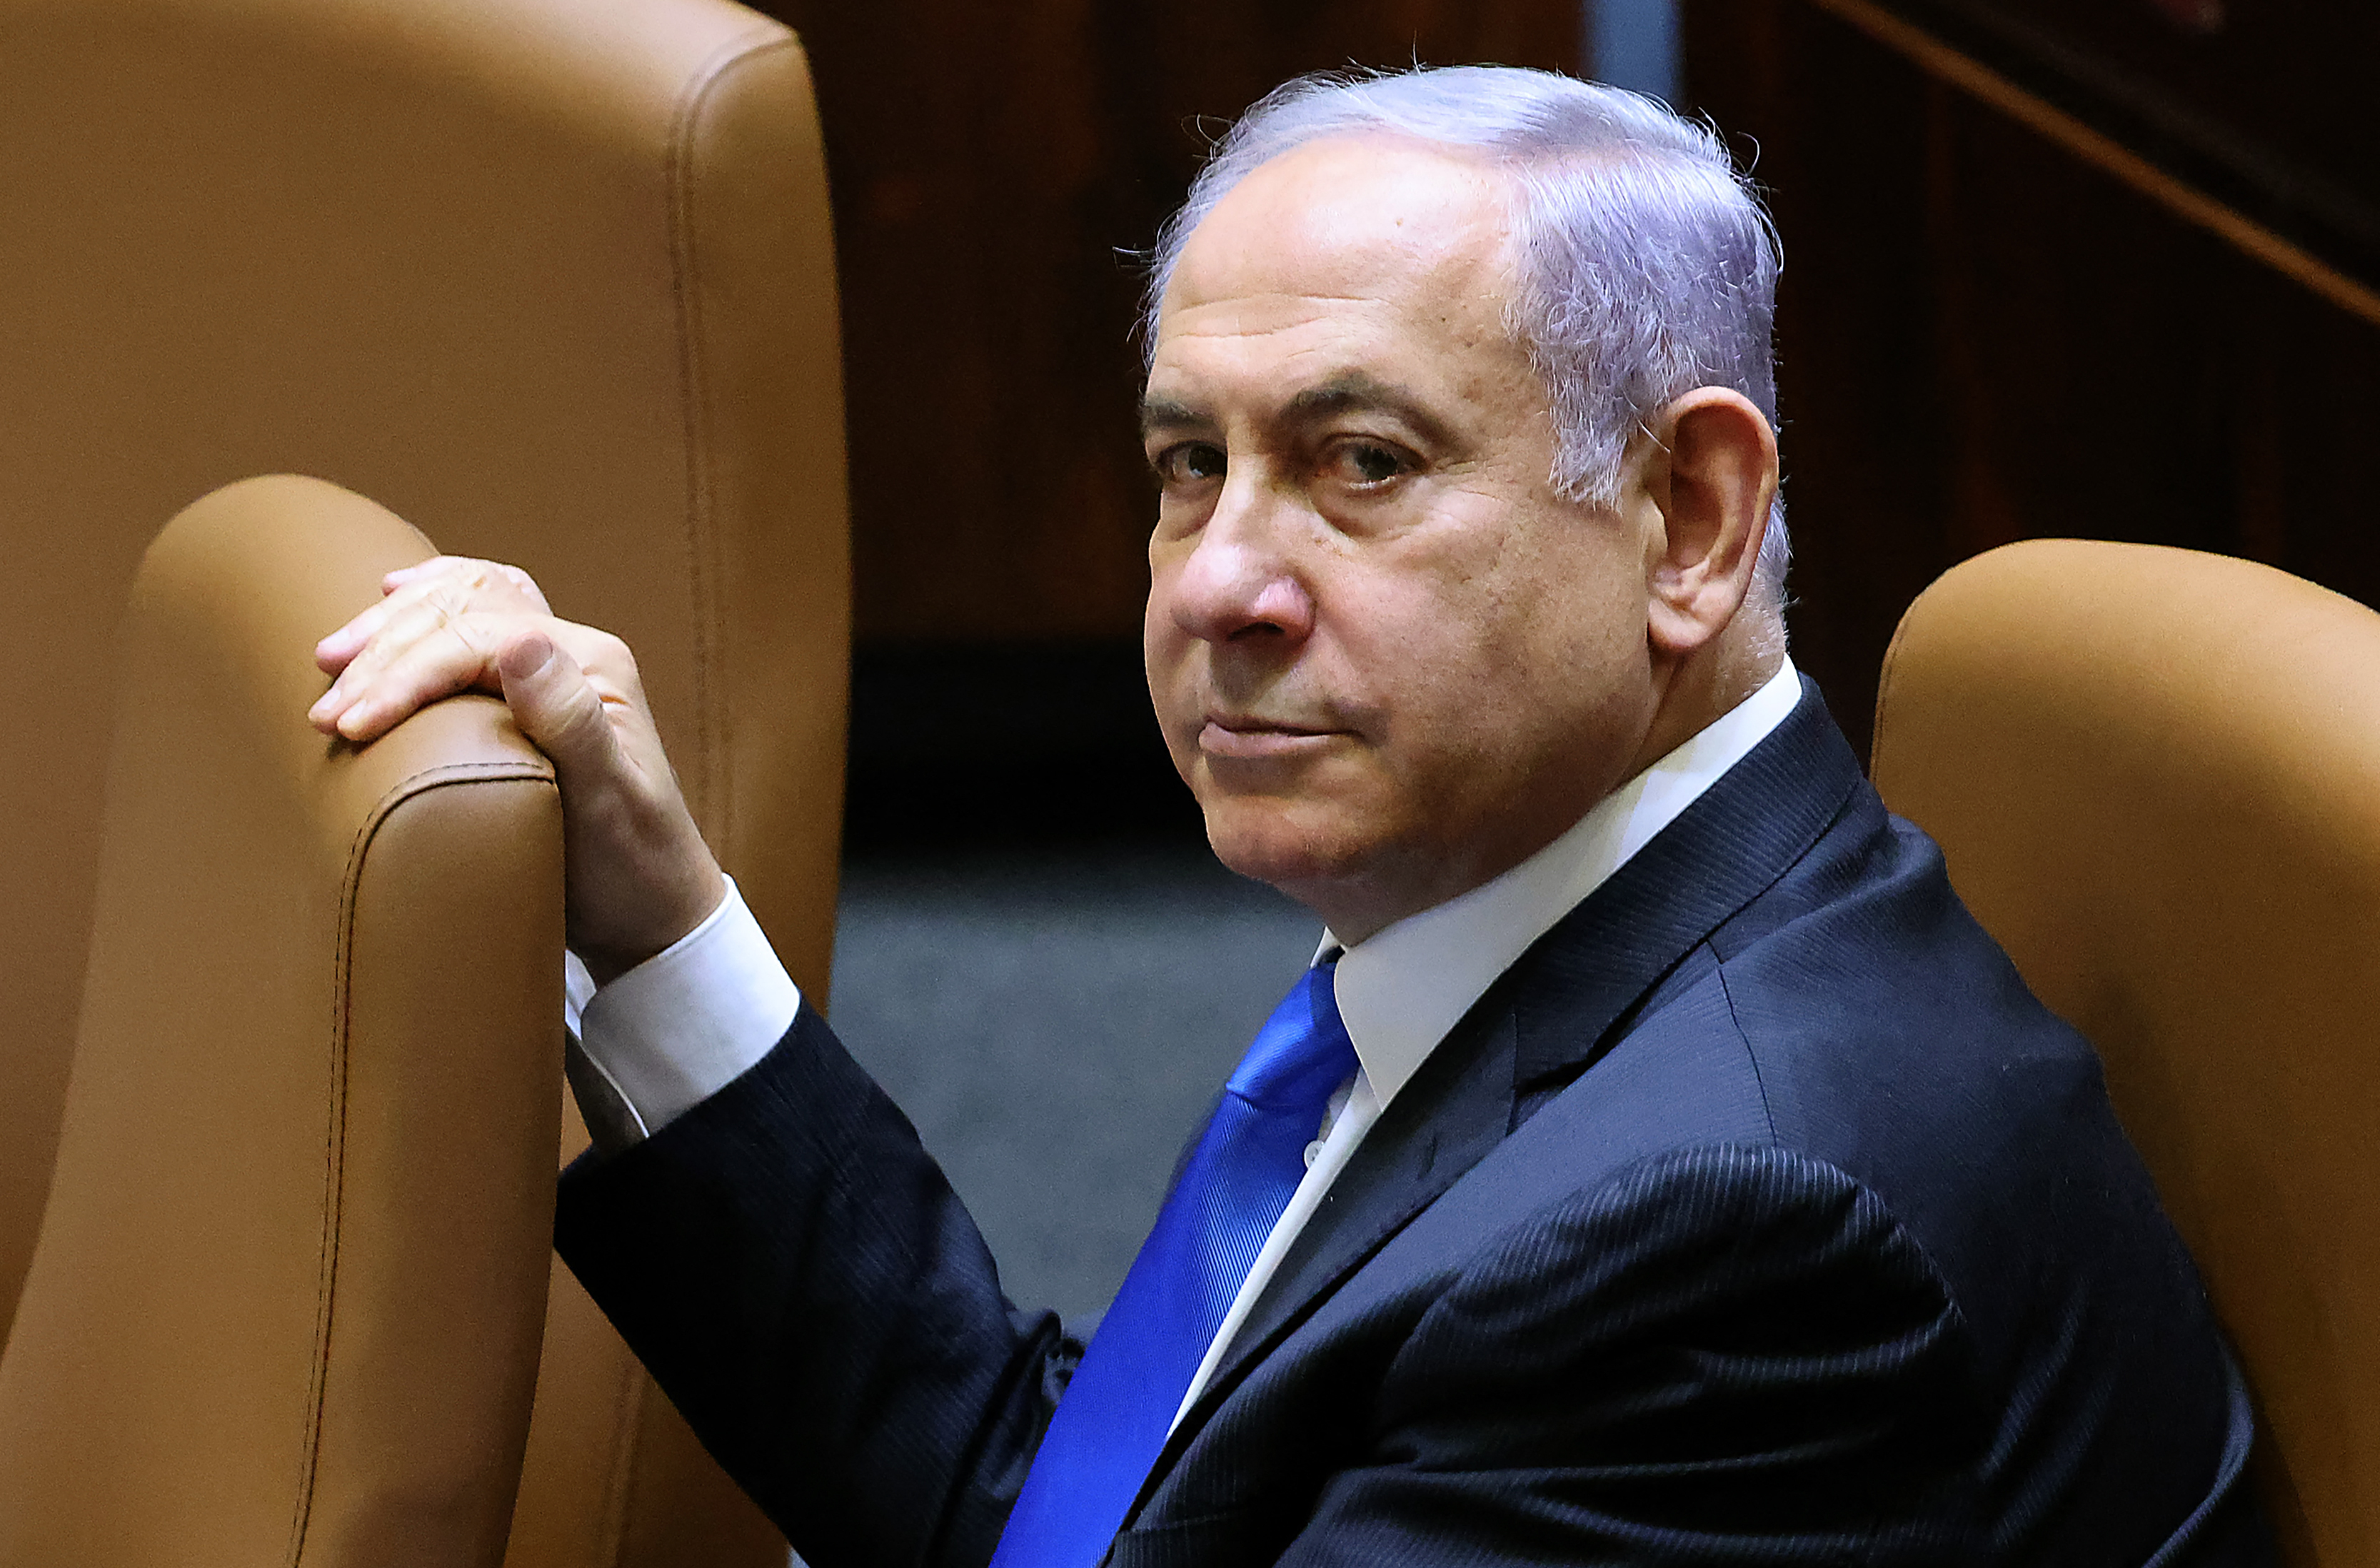 Israël: La fin de l'ère Benjamin Netanyahu officialisée